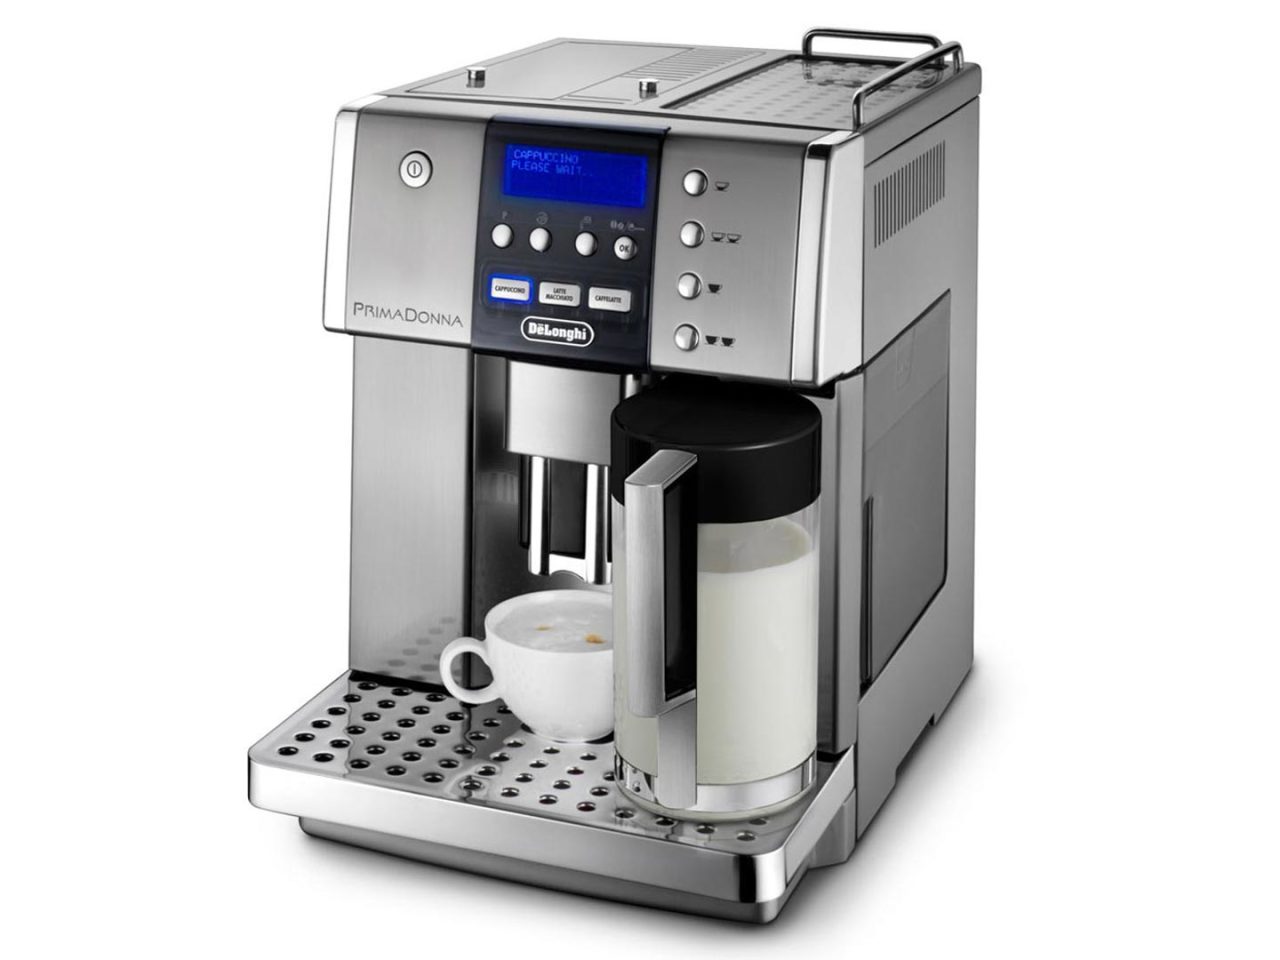 Delonghi Esam 6600 Primadonna S Espresso ve Cappuccino Makinası Makinası